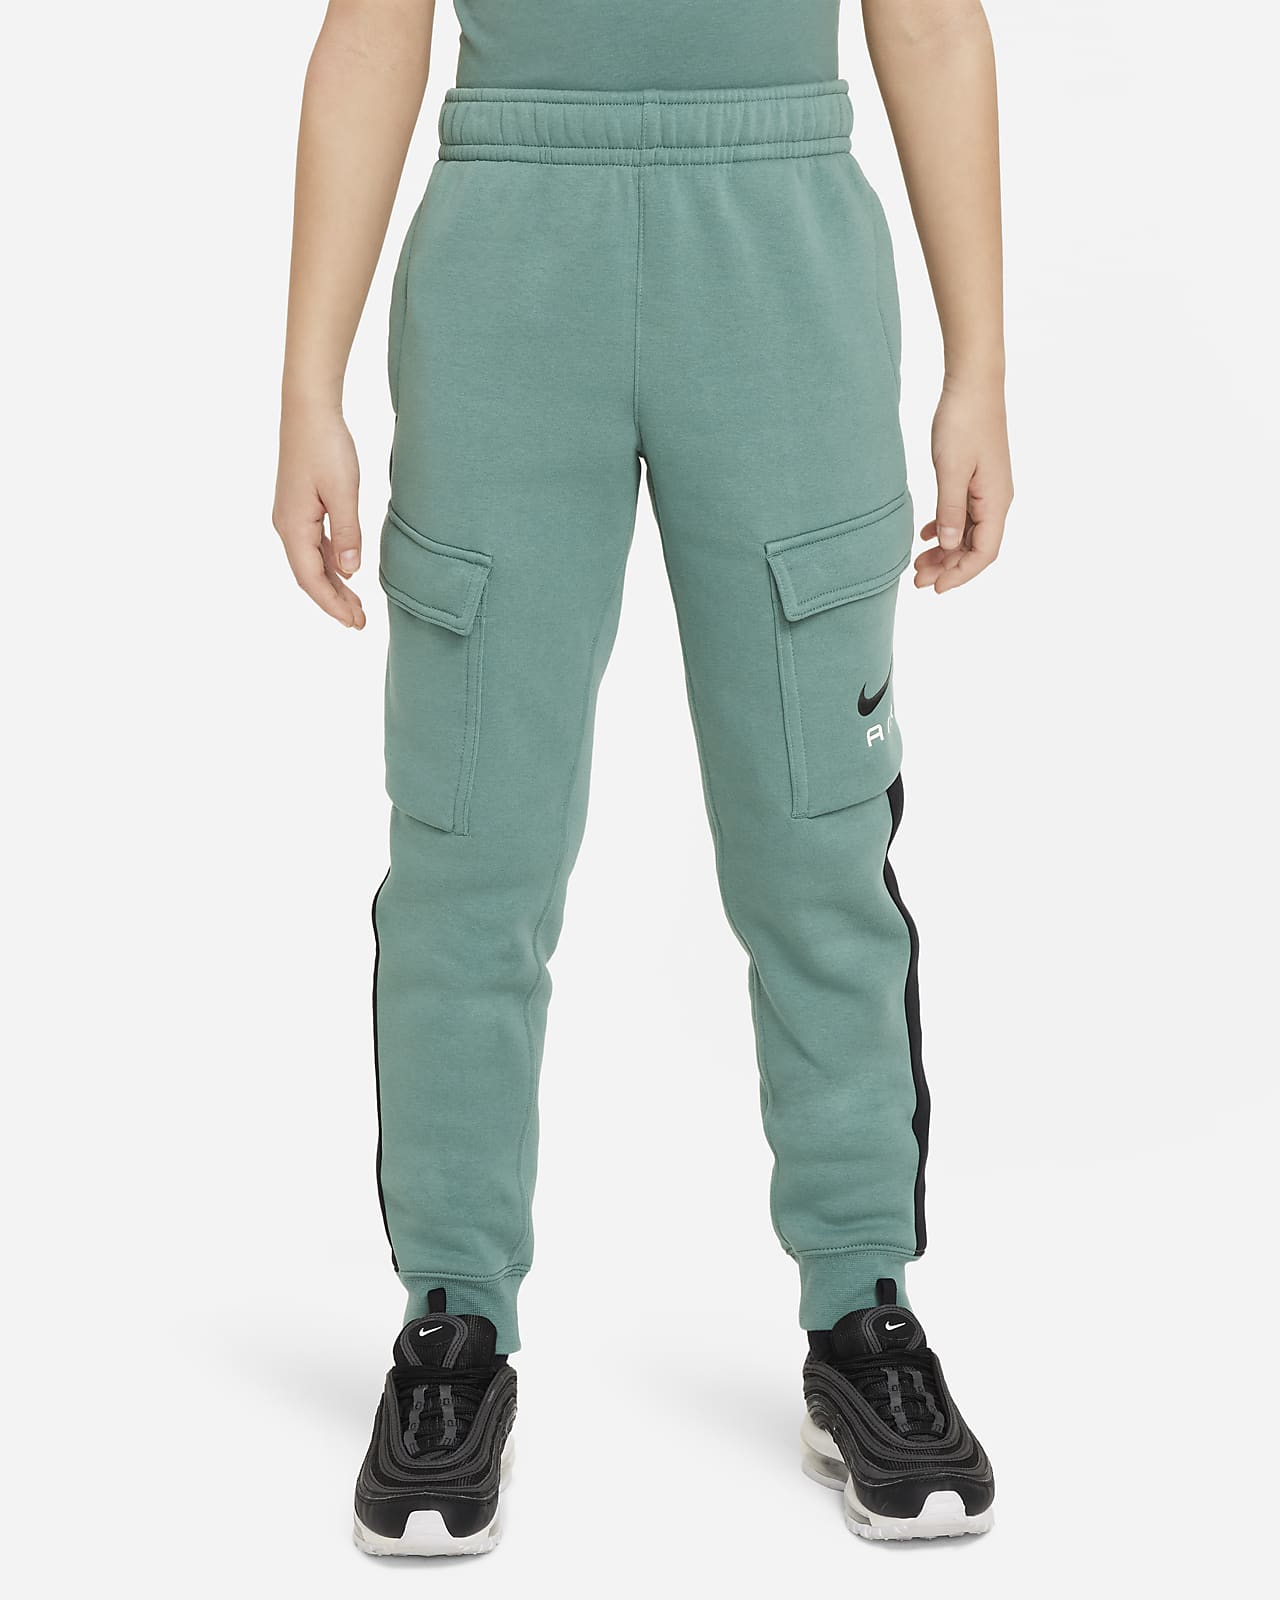 Pantalon cargo en tissu Fleece Nike Air pour ado